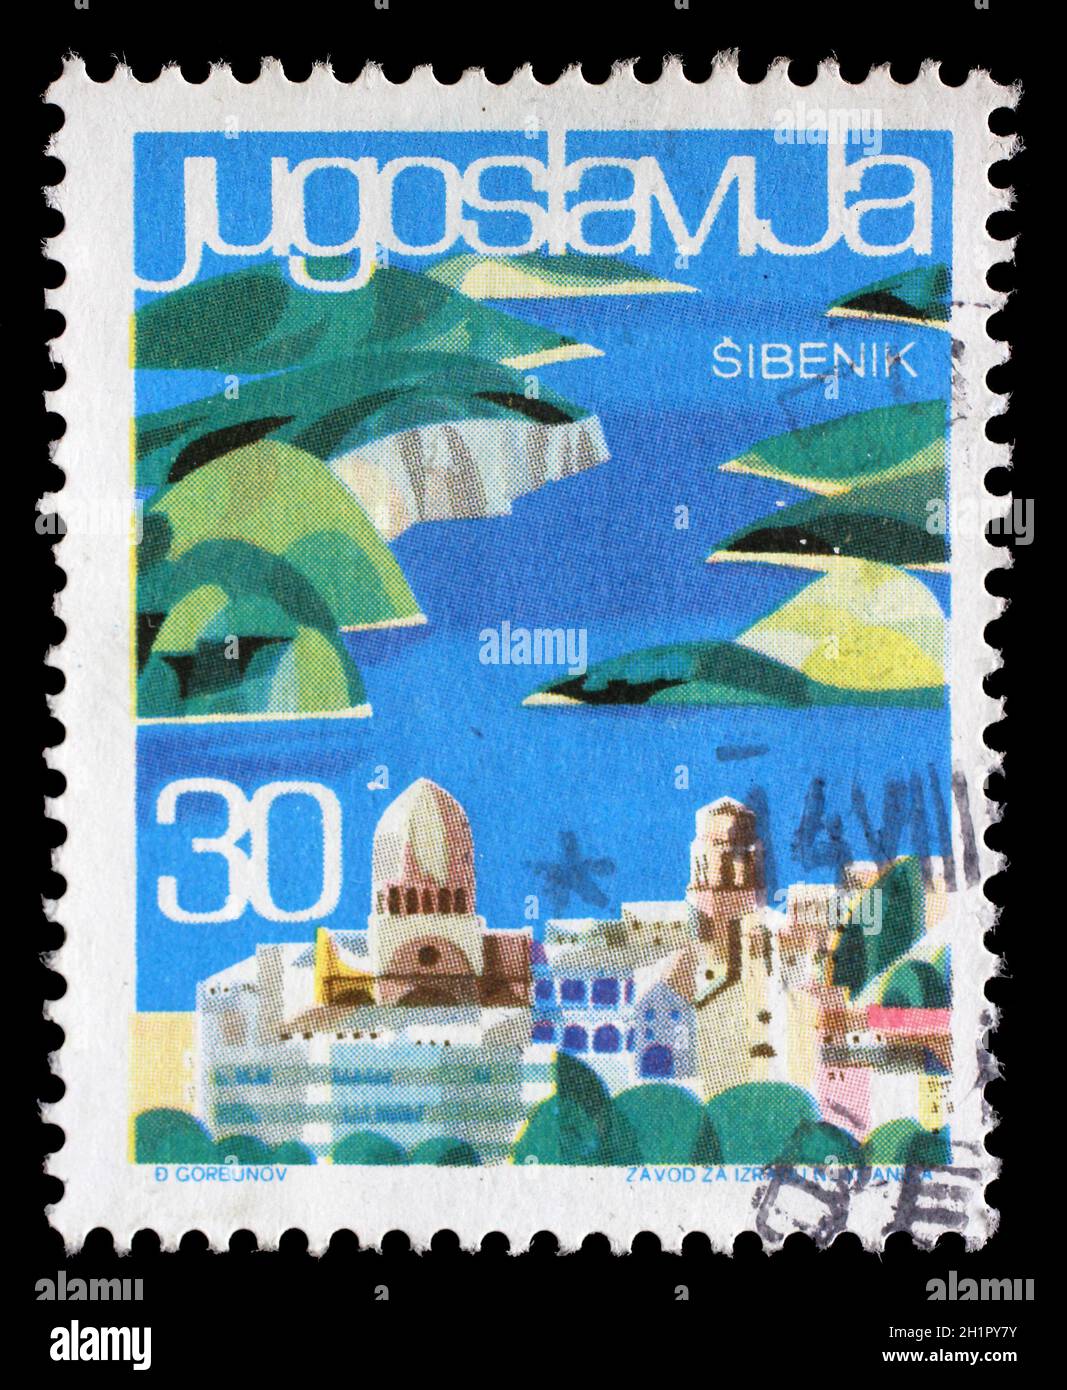 Timbres en Yougoslavie à partir de la question du tourisme local montre Sibenik, Croatie, vers 1963. Banque D'Images